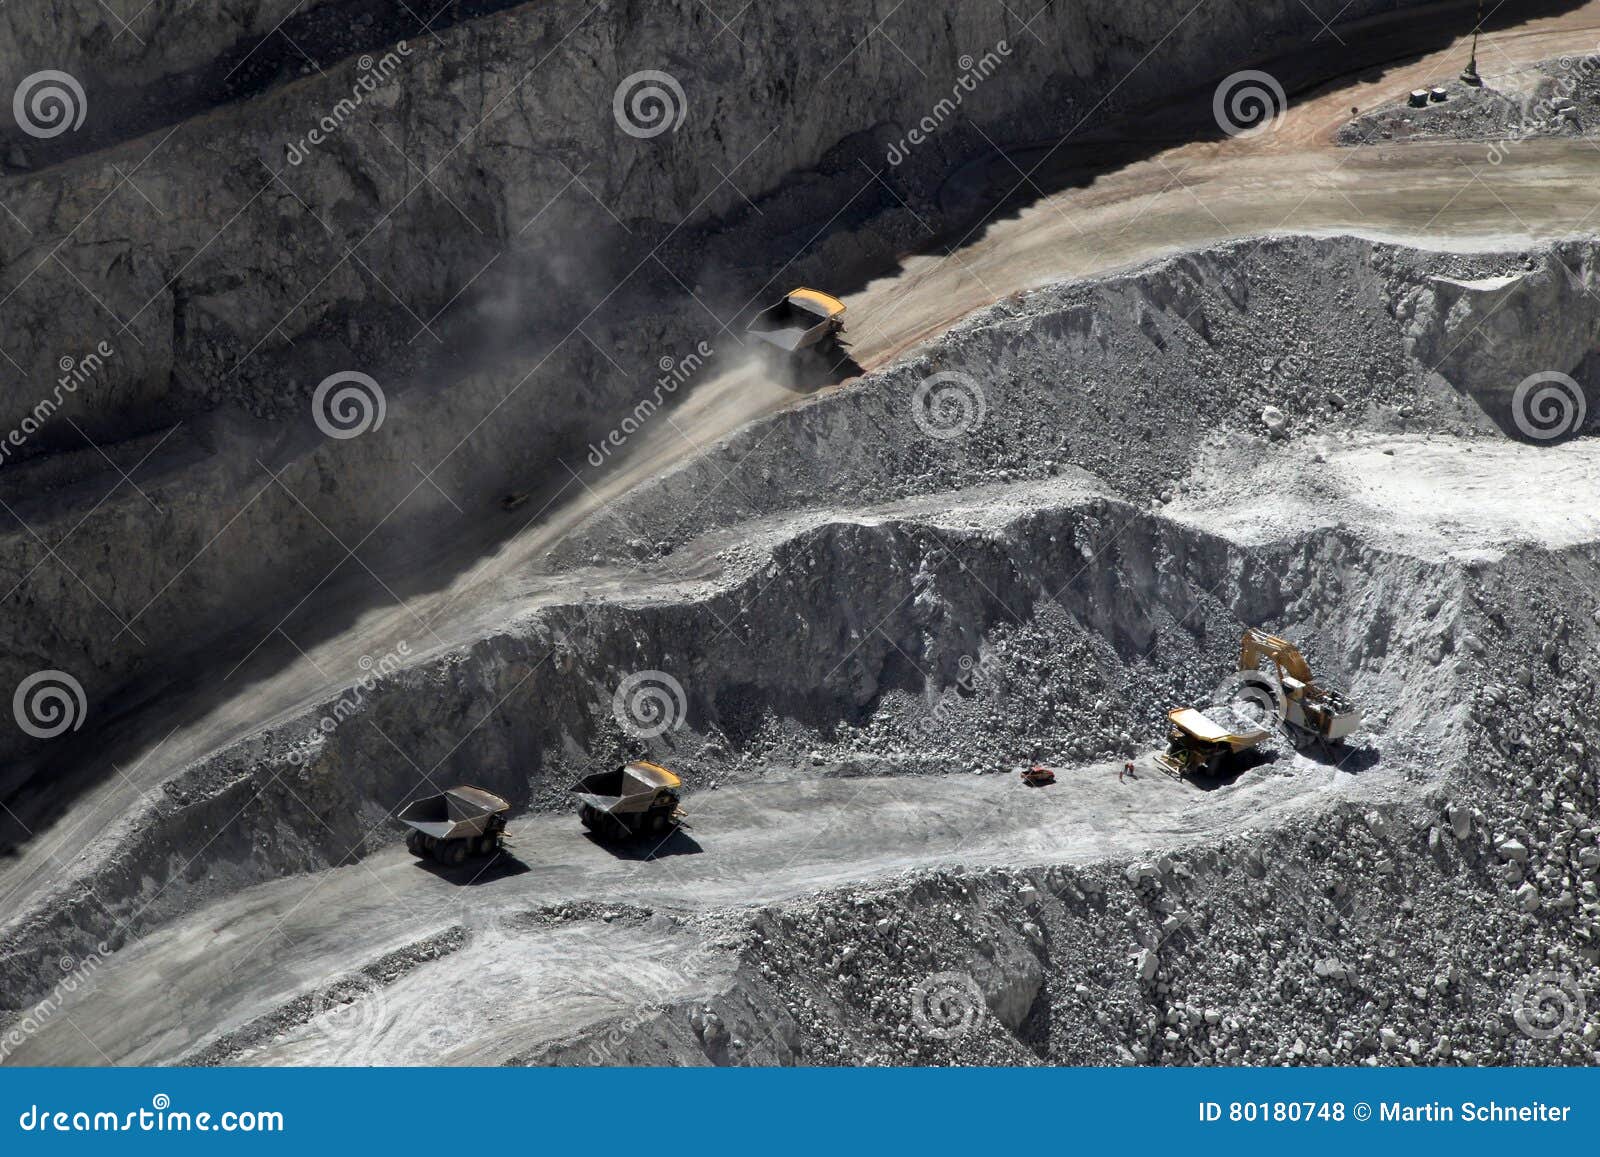 truck at chuquicamata, world's biggest open pit copper mine, chile